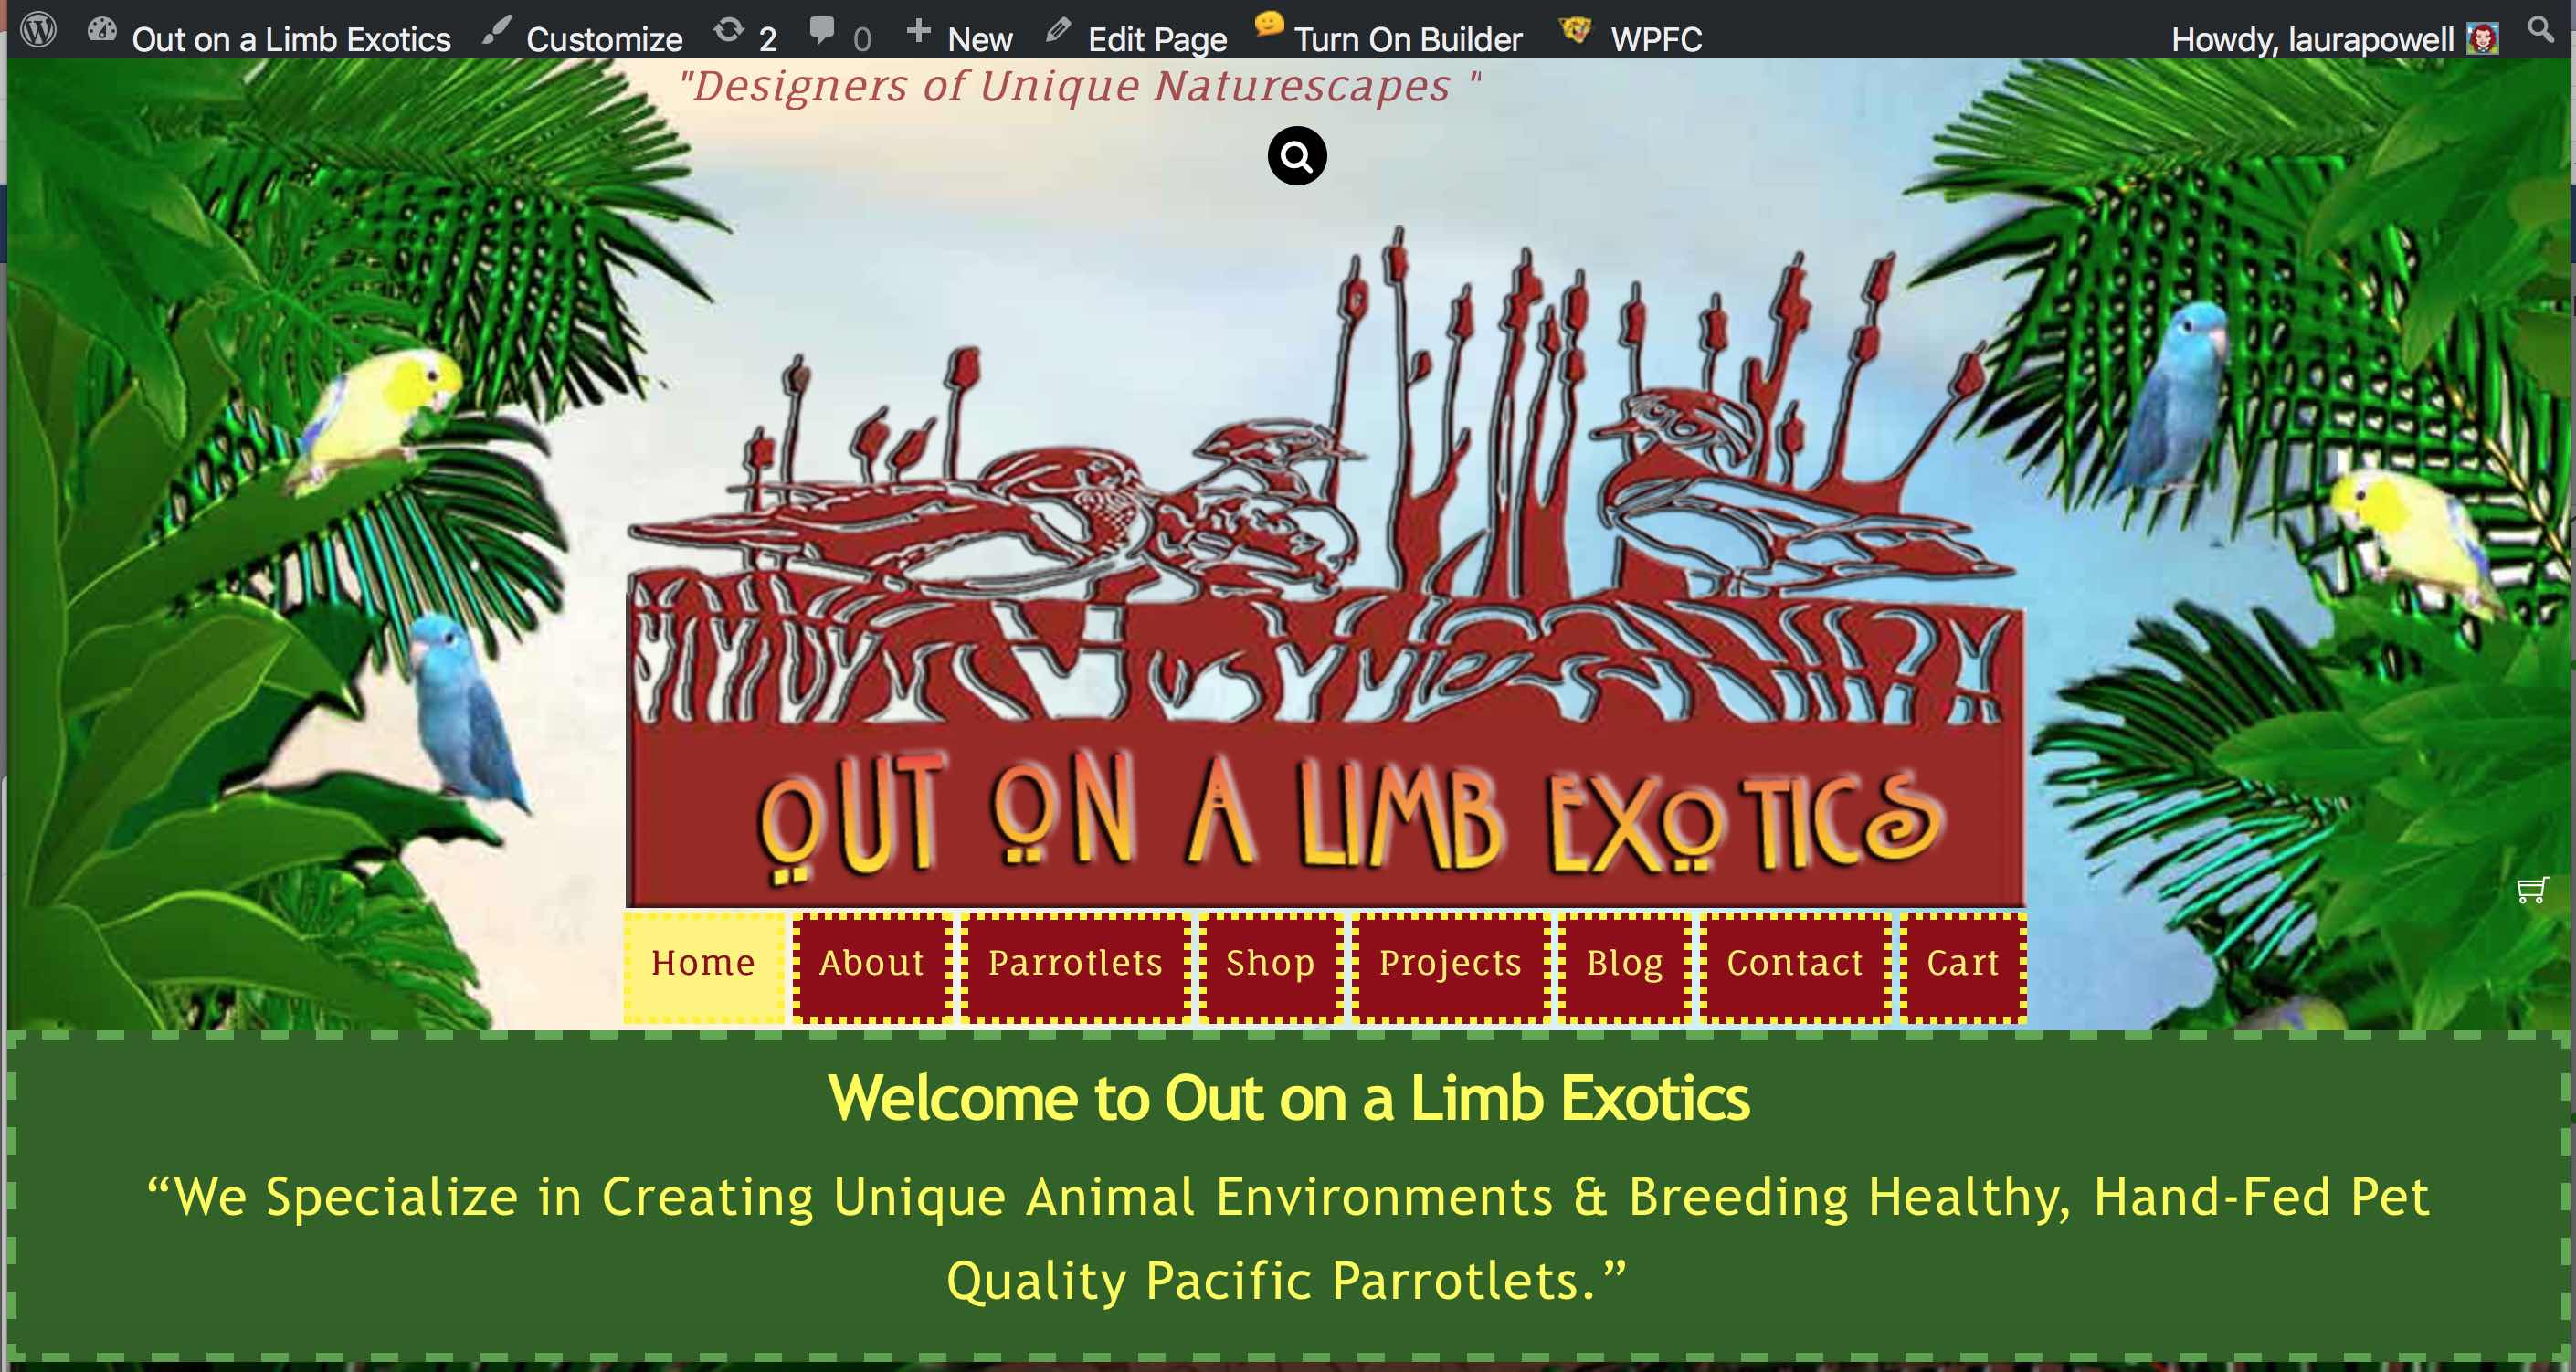 The Cedar Waxwing Group Website